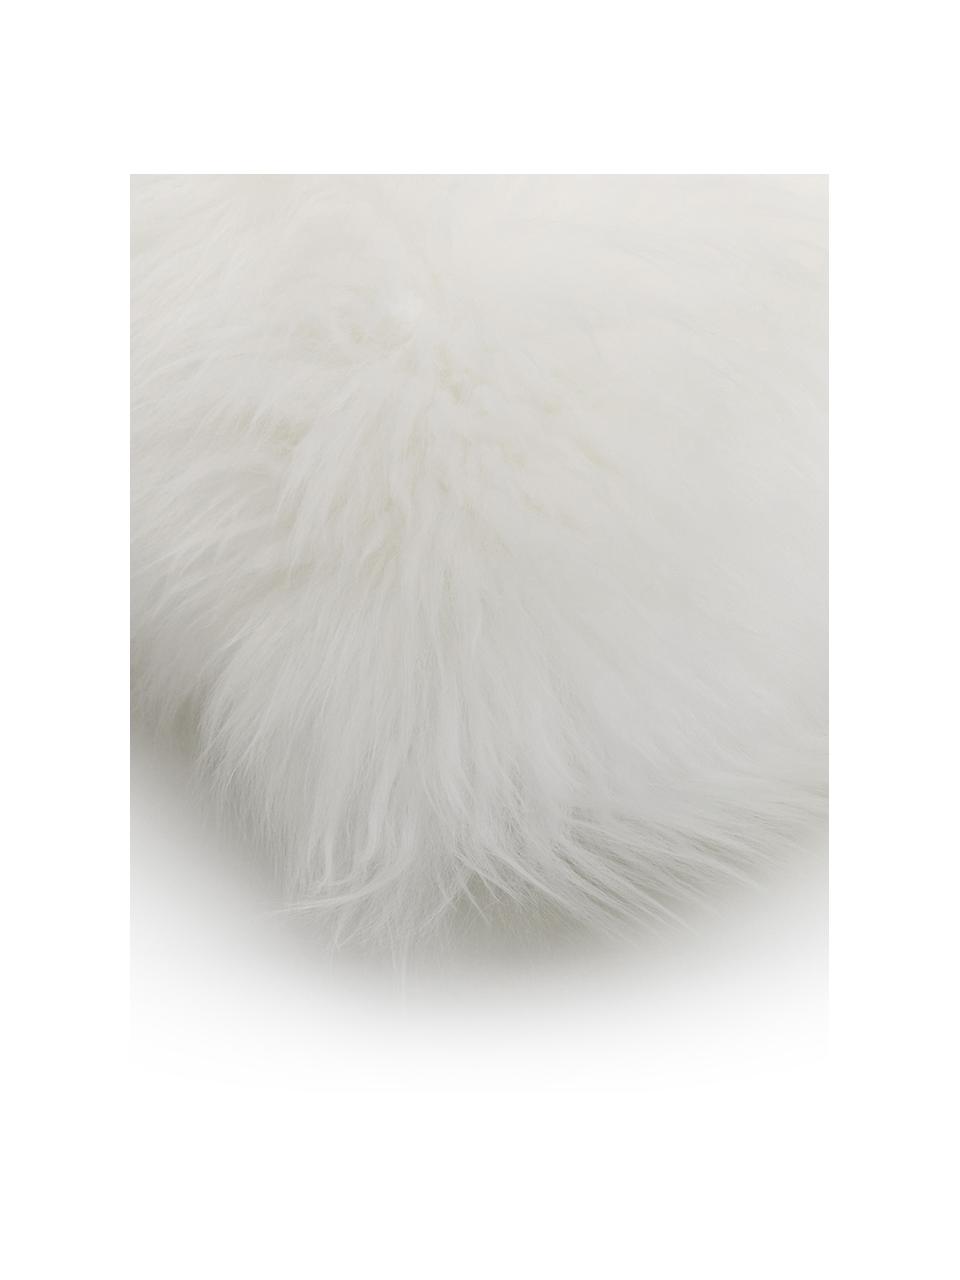 Housse de coussin en peau de mouton blanc crème Oslo, lisse, Blanc crème, larg. 30 x long. 50 cm